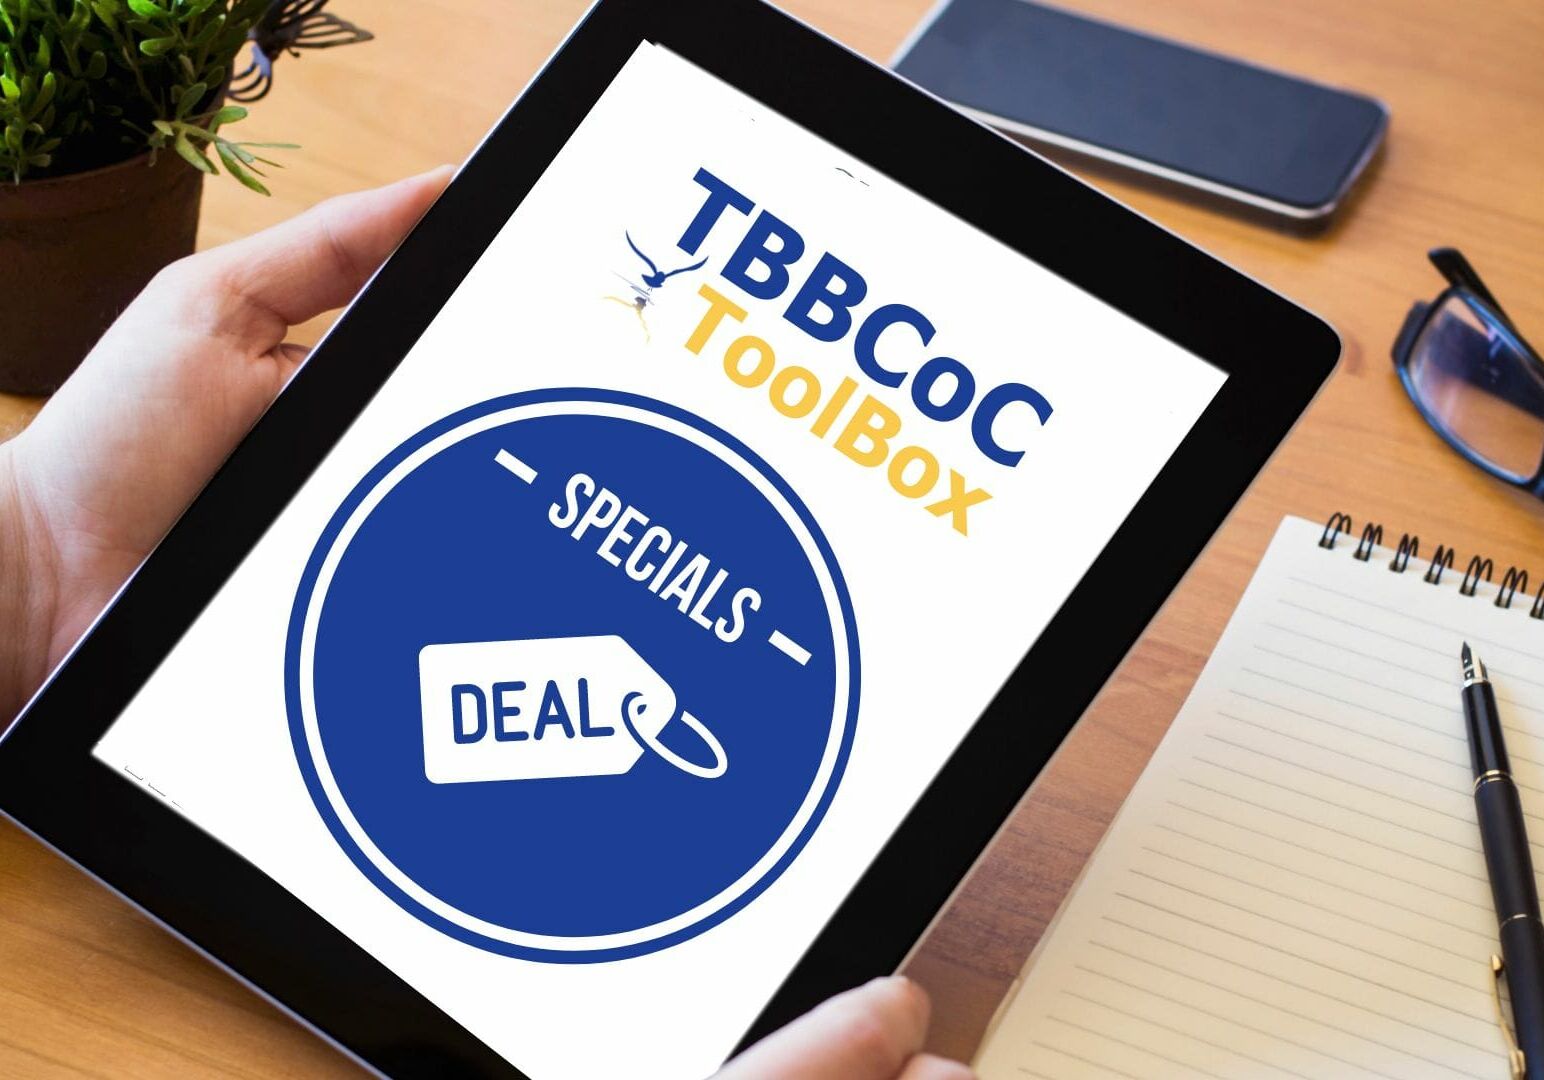 TBBCoC ToolBox Deals